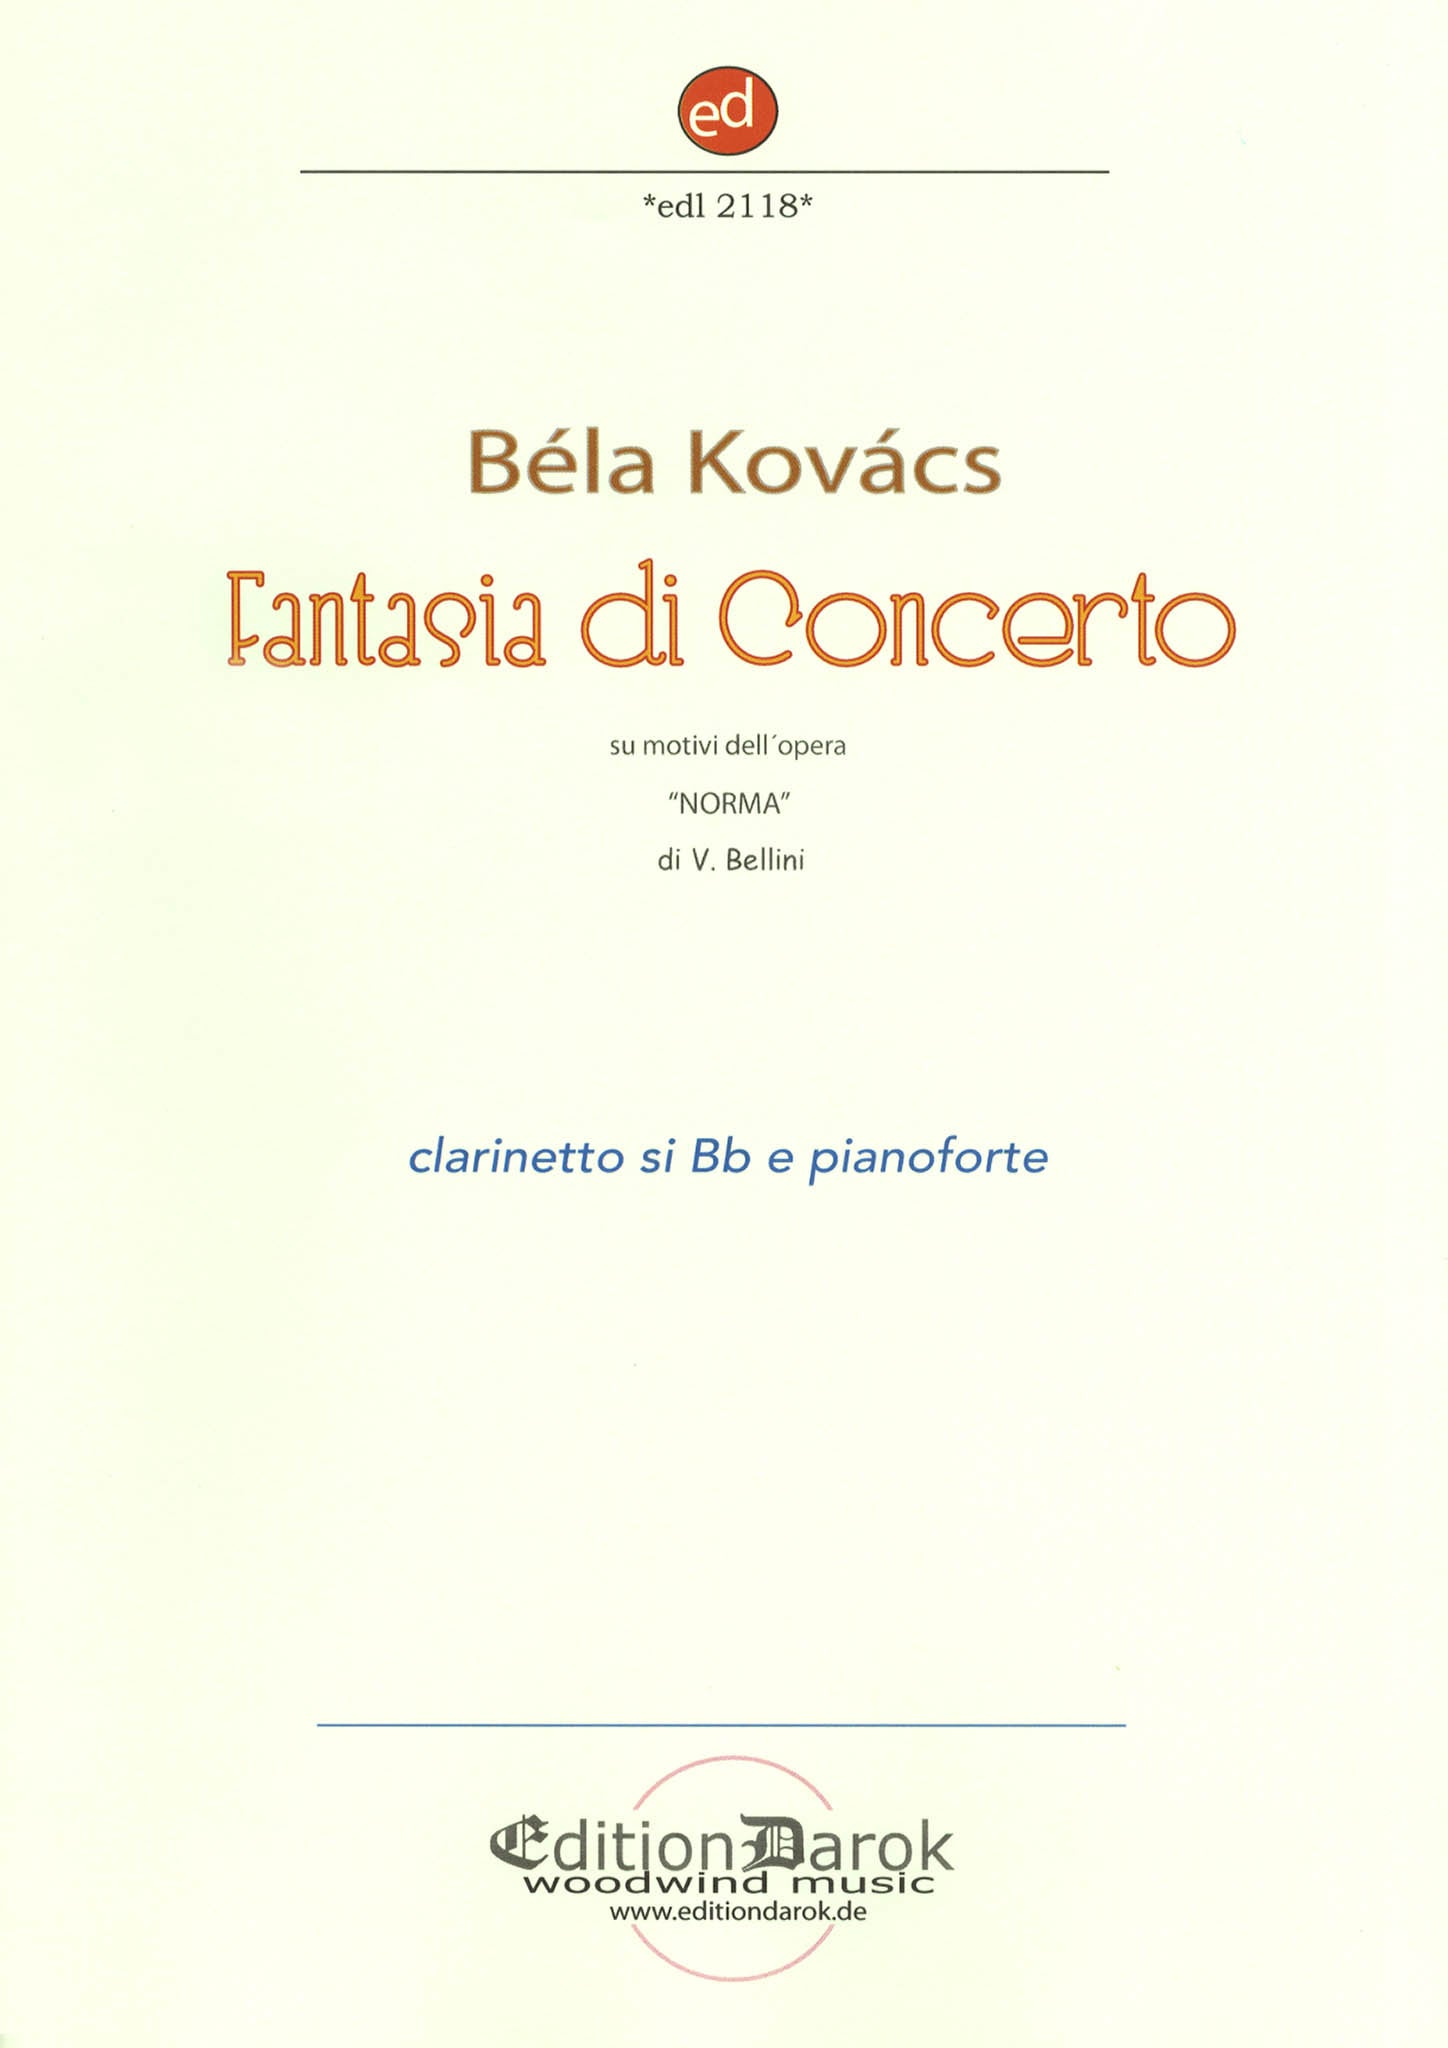 Kovacs Concert Fantasy Bellini Norma clarinet piano Cover